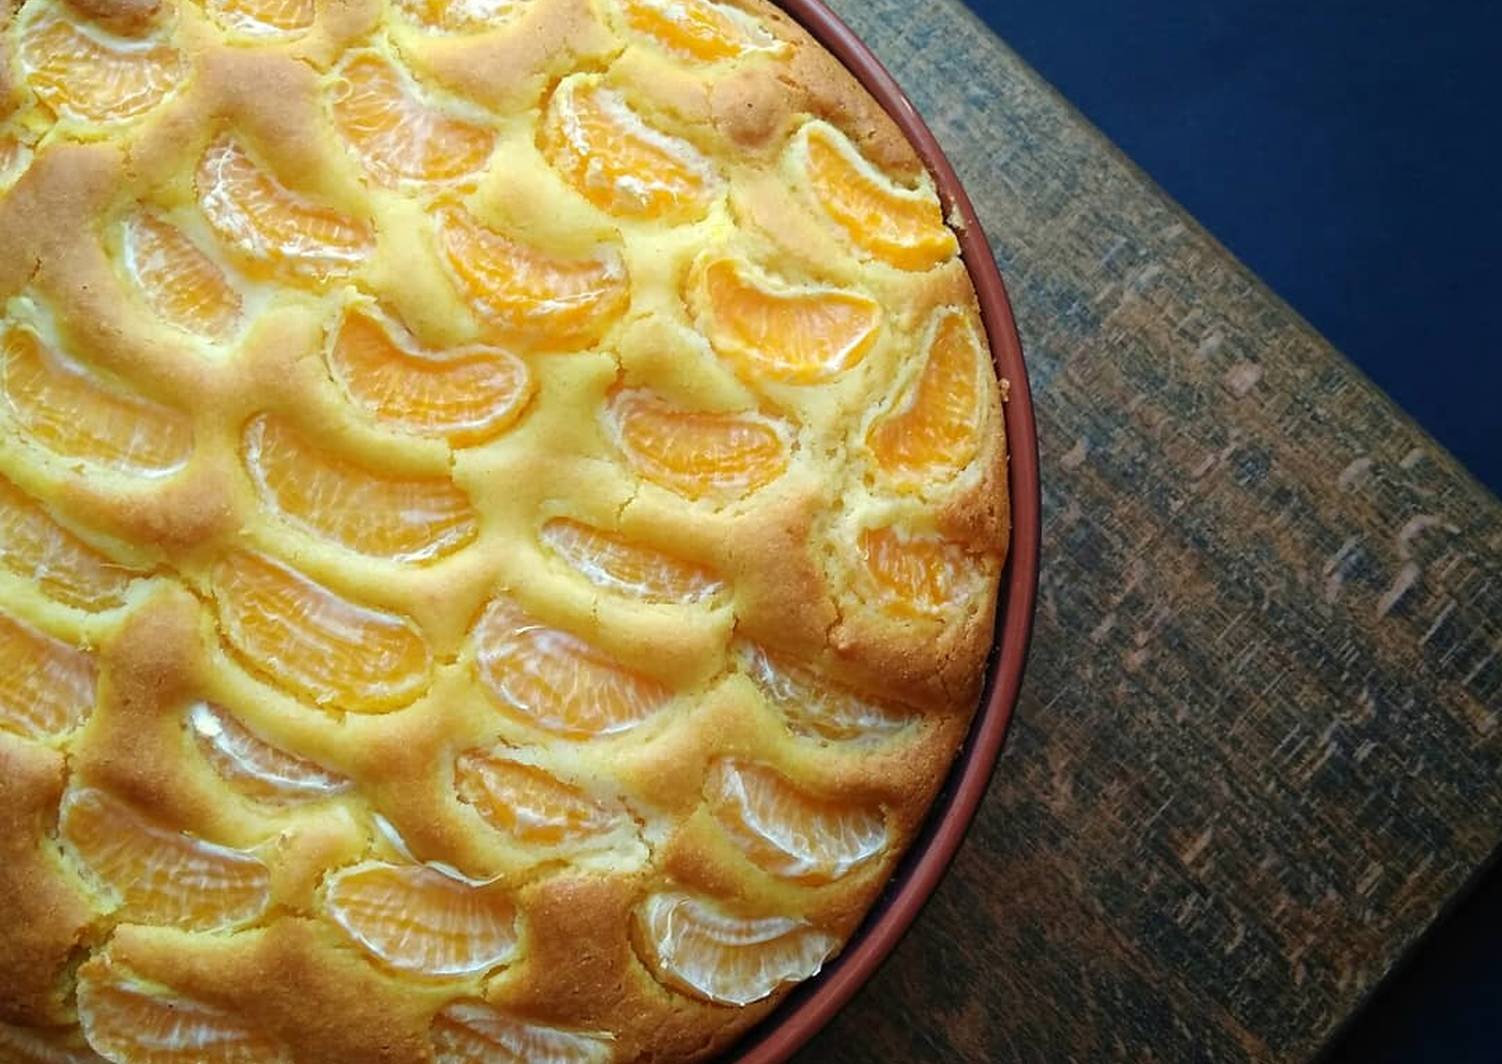 Пироги с мандаринами рецепты с фото